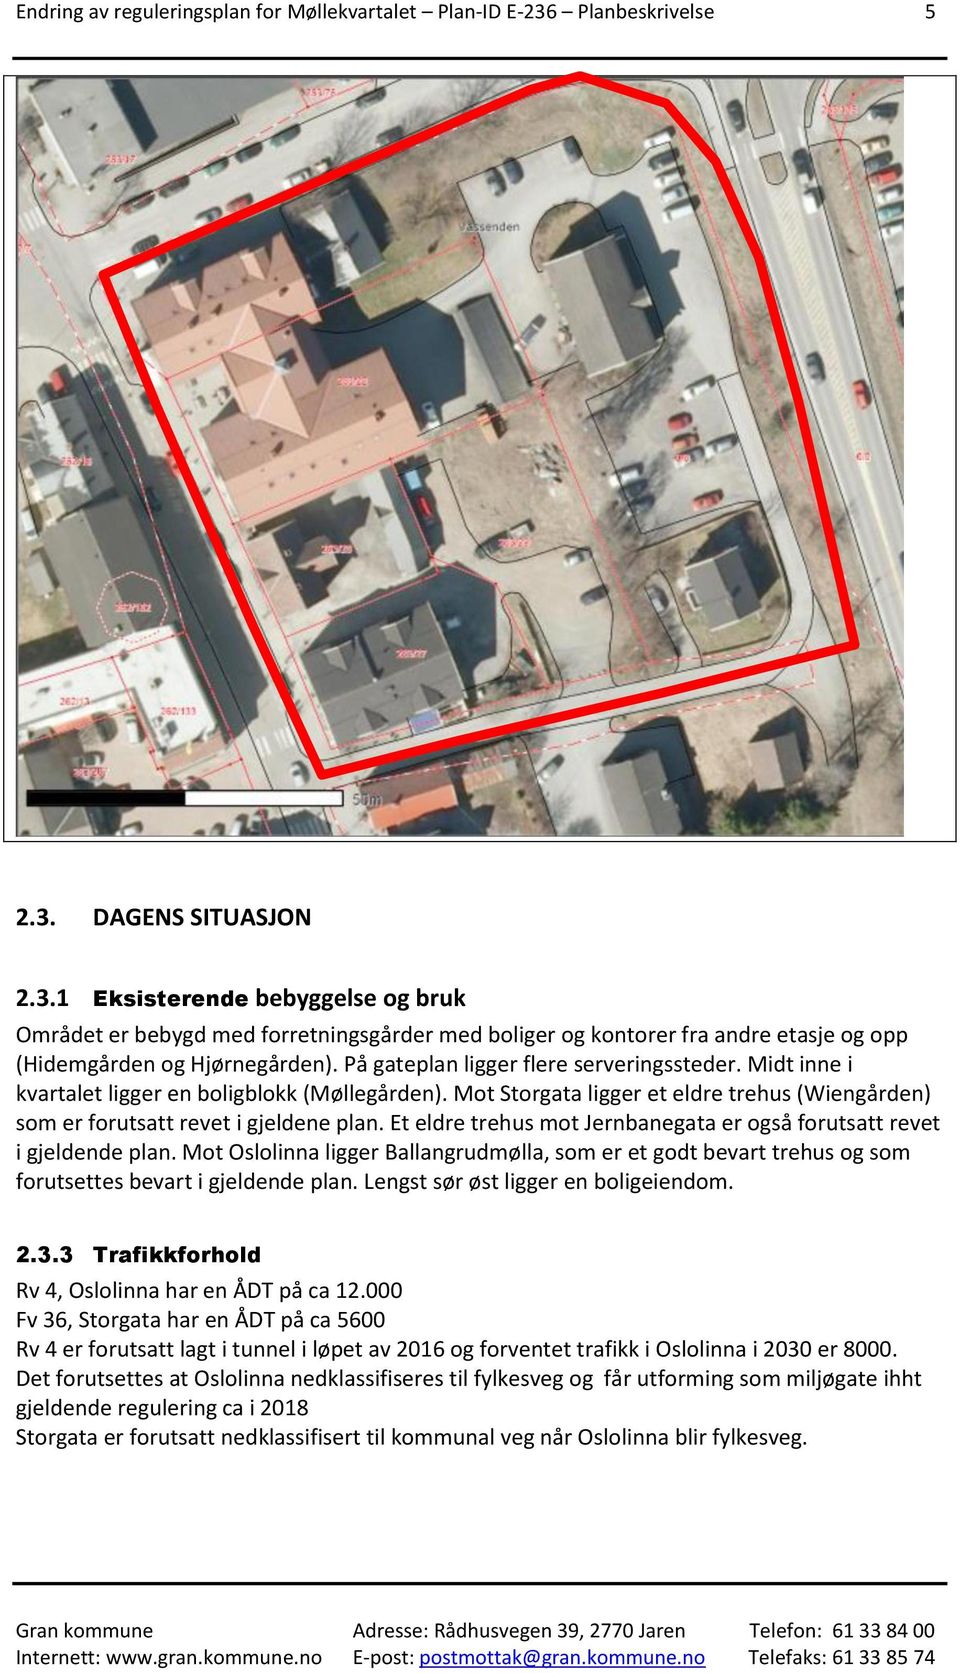 På gateplan ligger flere serveringssteder. Midt inne i kvartalet ligger en boligblokk (Møllegården). Mot Storgata ligger et eldre trehus (Wiengården) som er forutsatt revet i gjeldene plan.